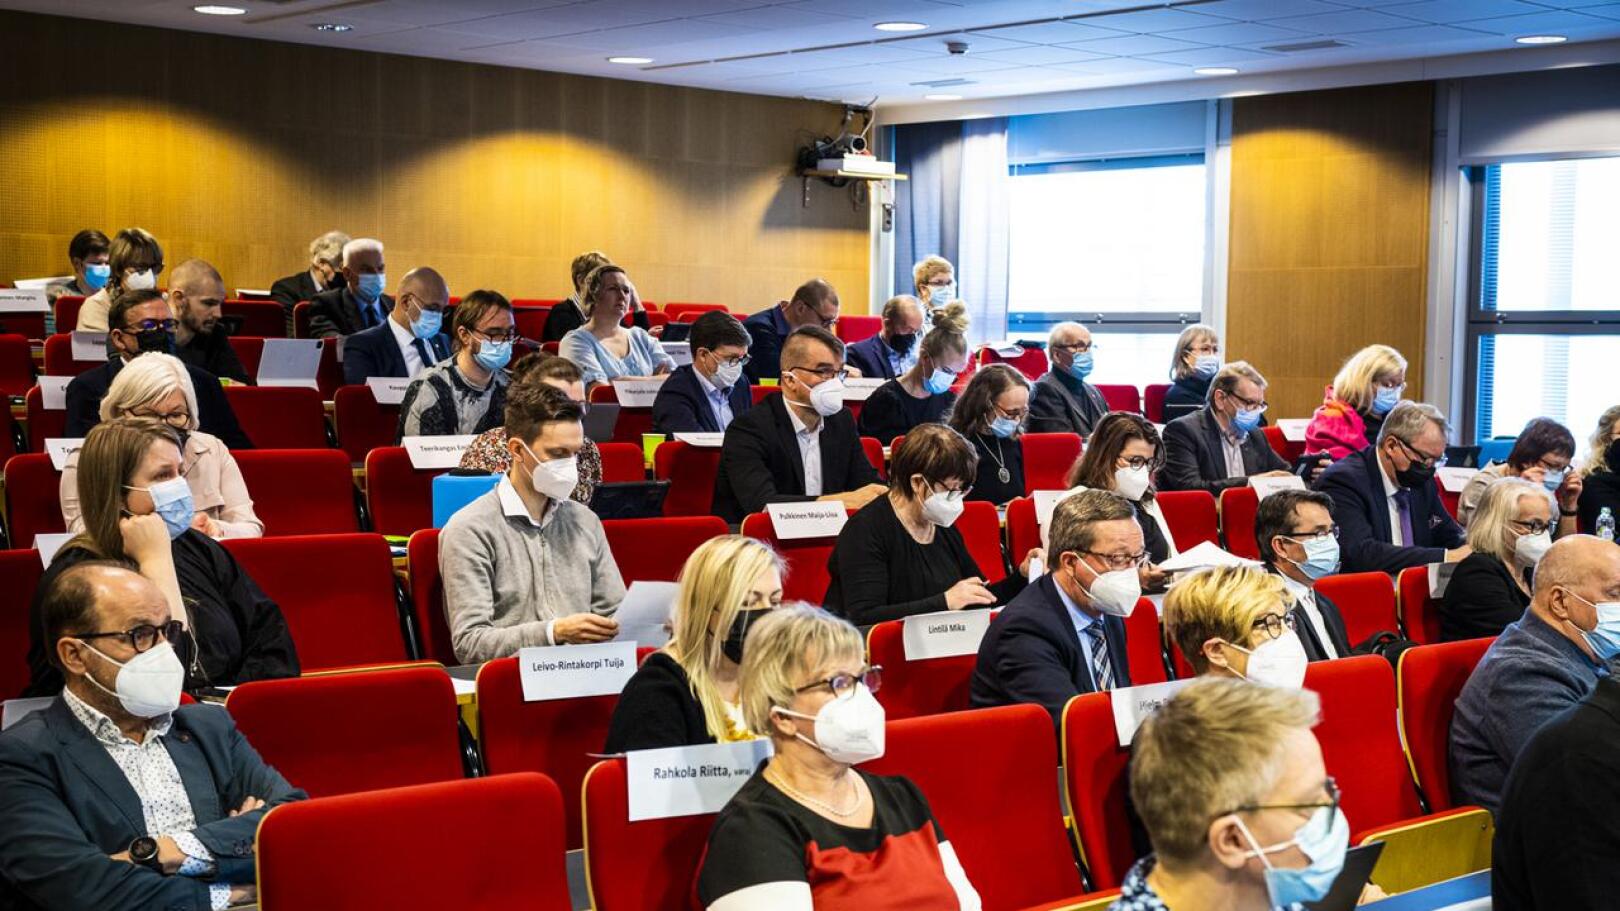 Keski-Pohjanmaan aluevaltuusto piti maanantaina historianasa ensimmäisen kokouksen Soiten auditoriossa Kokkolassa.